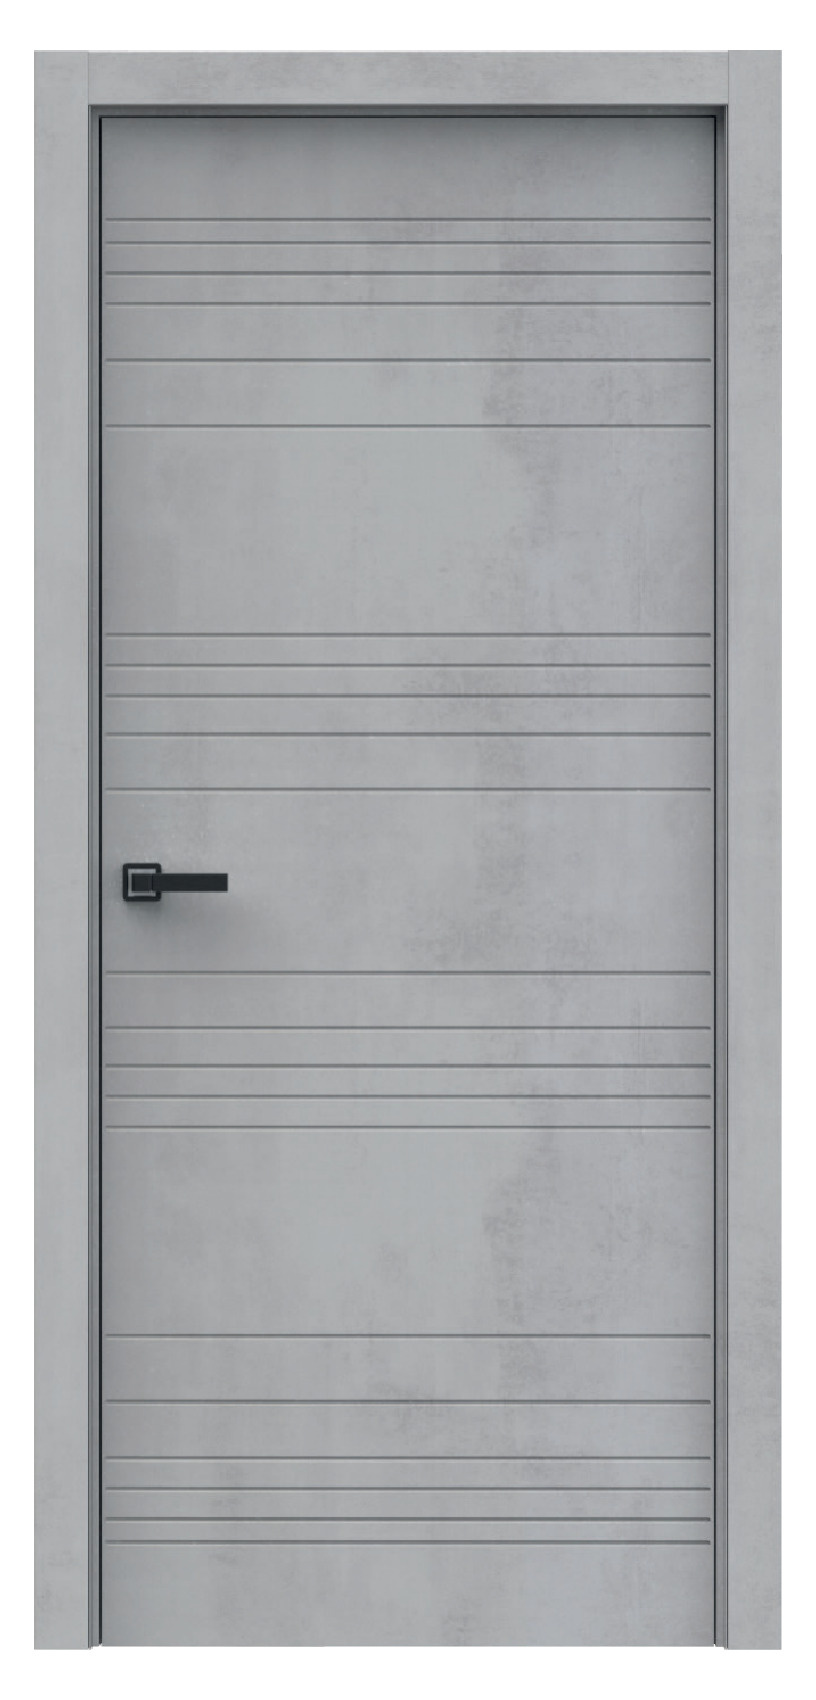 Questdoors Межкомнатная дверь QMS1, арт. 17890 - фото №1